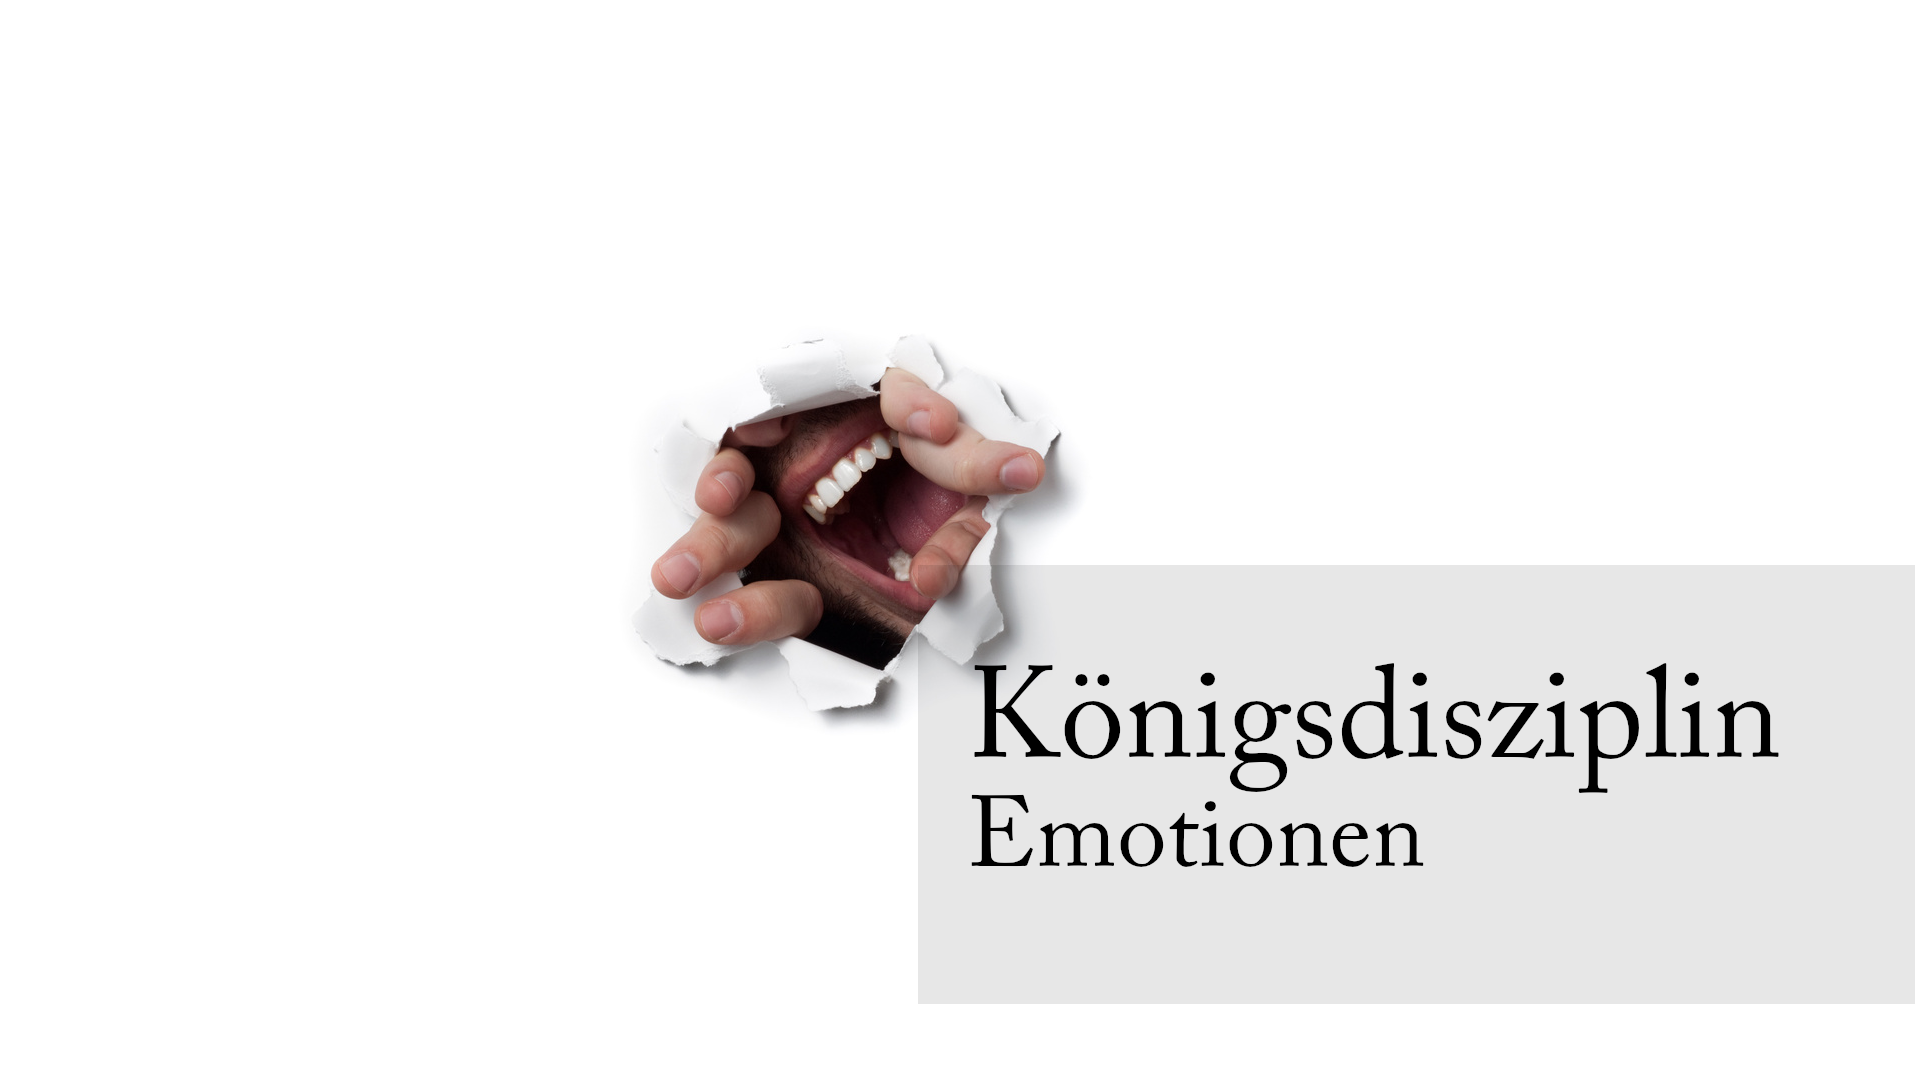 Emotionen sind eine Königs-Disziplin der Kommunikation. - Bild: Pexels.com